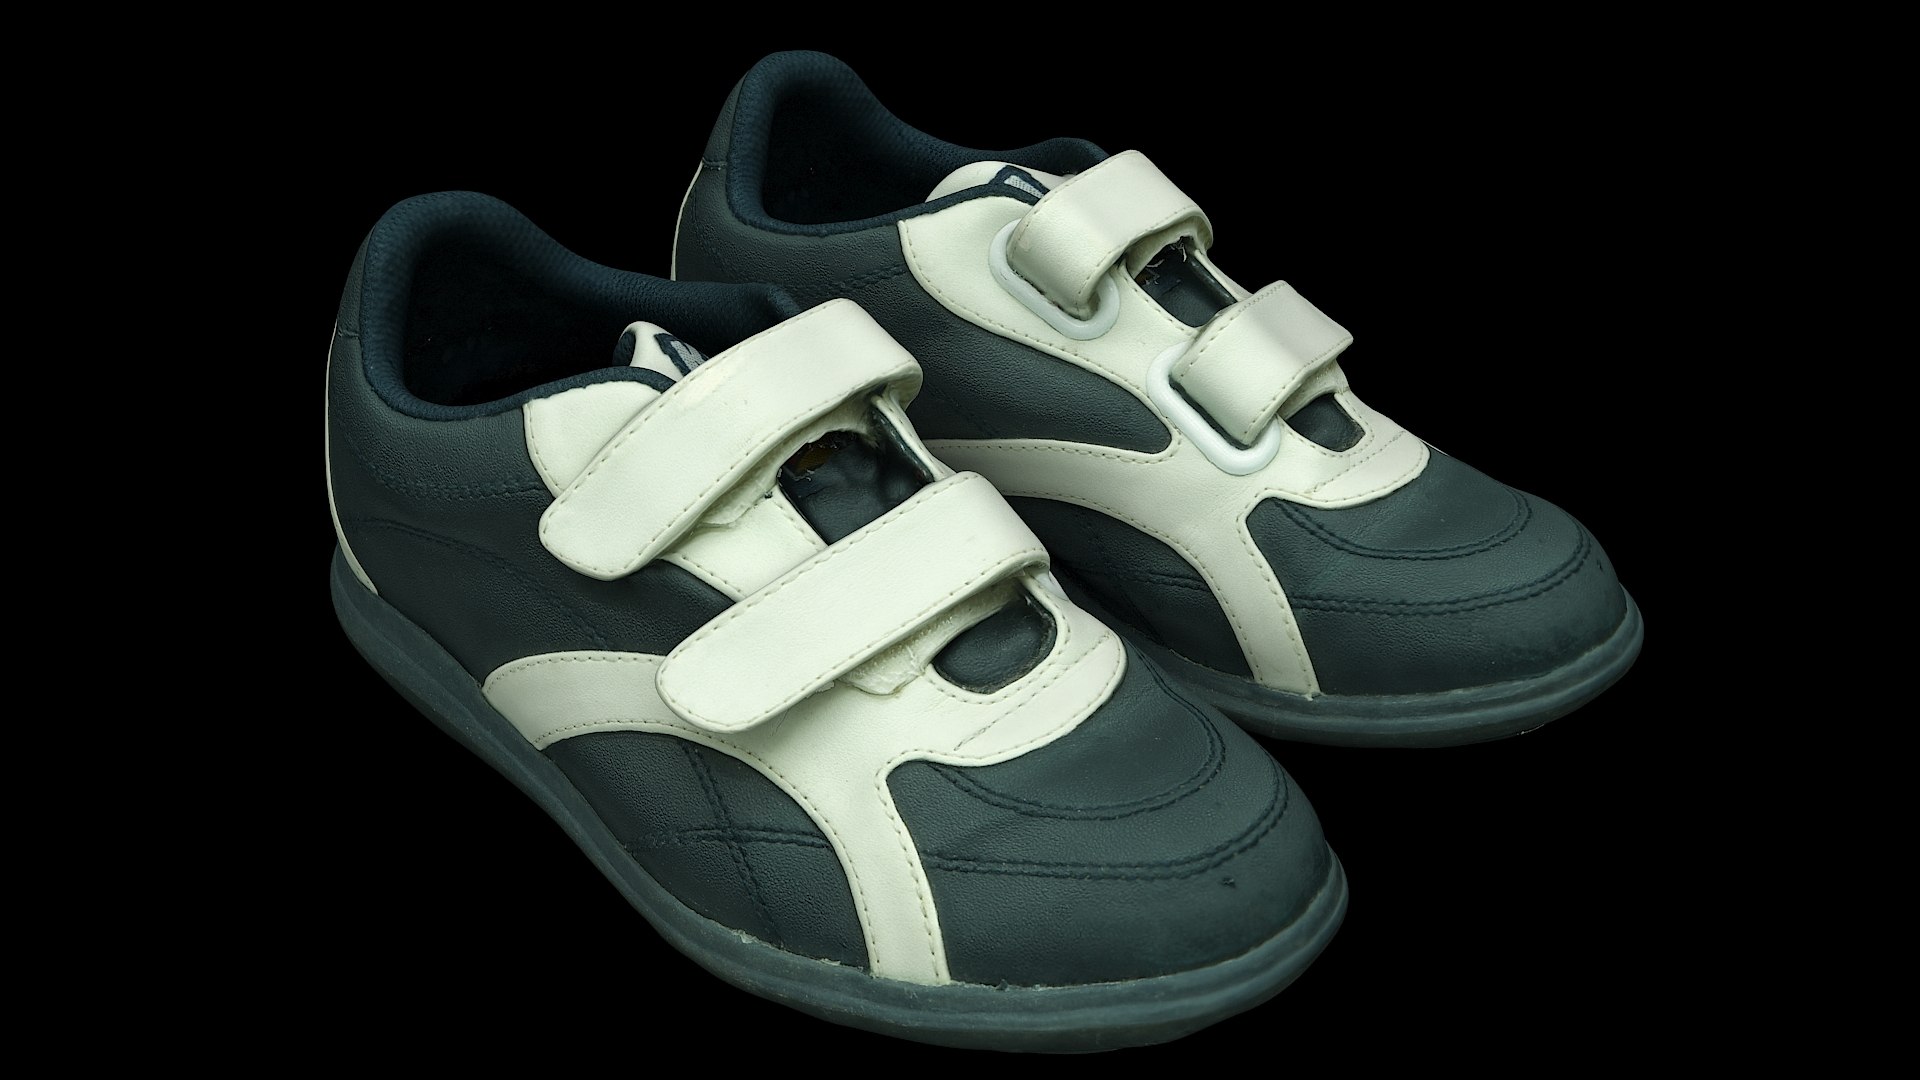 Retopology sport shoes 3D model - TurboSquid 1552706